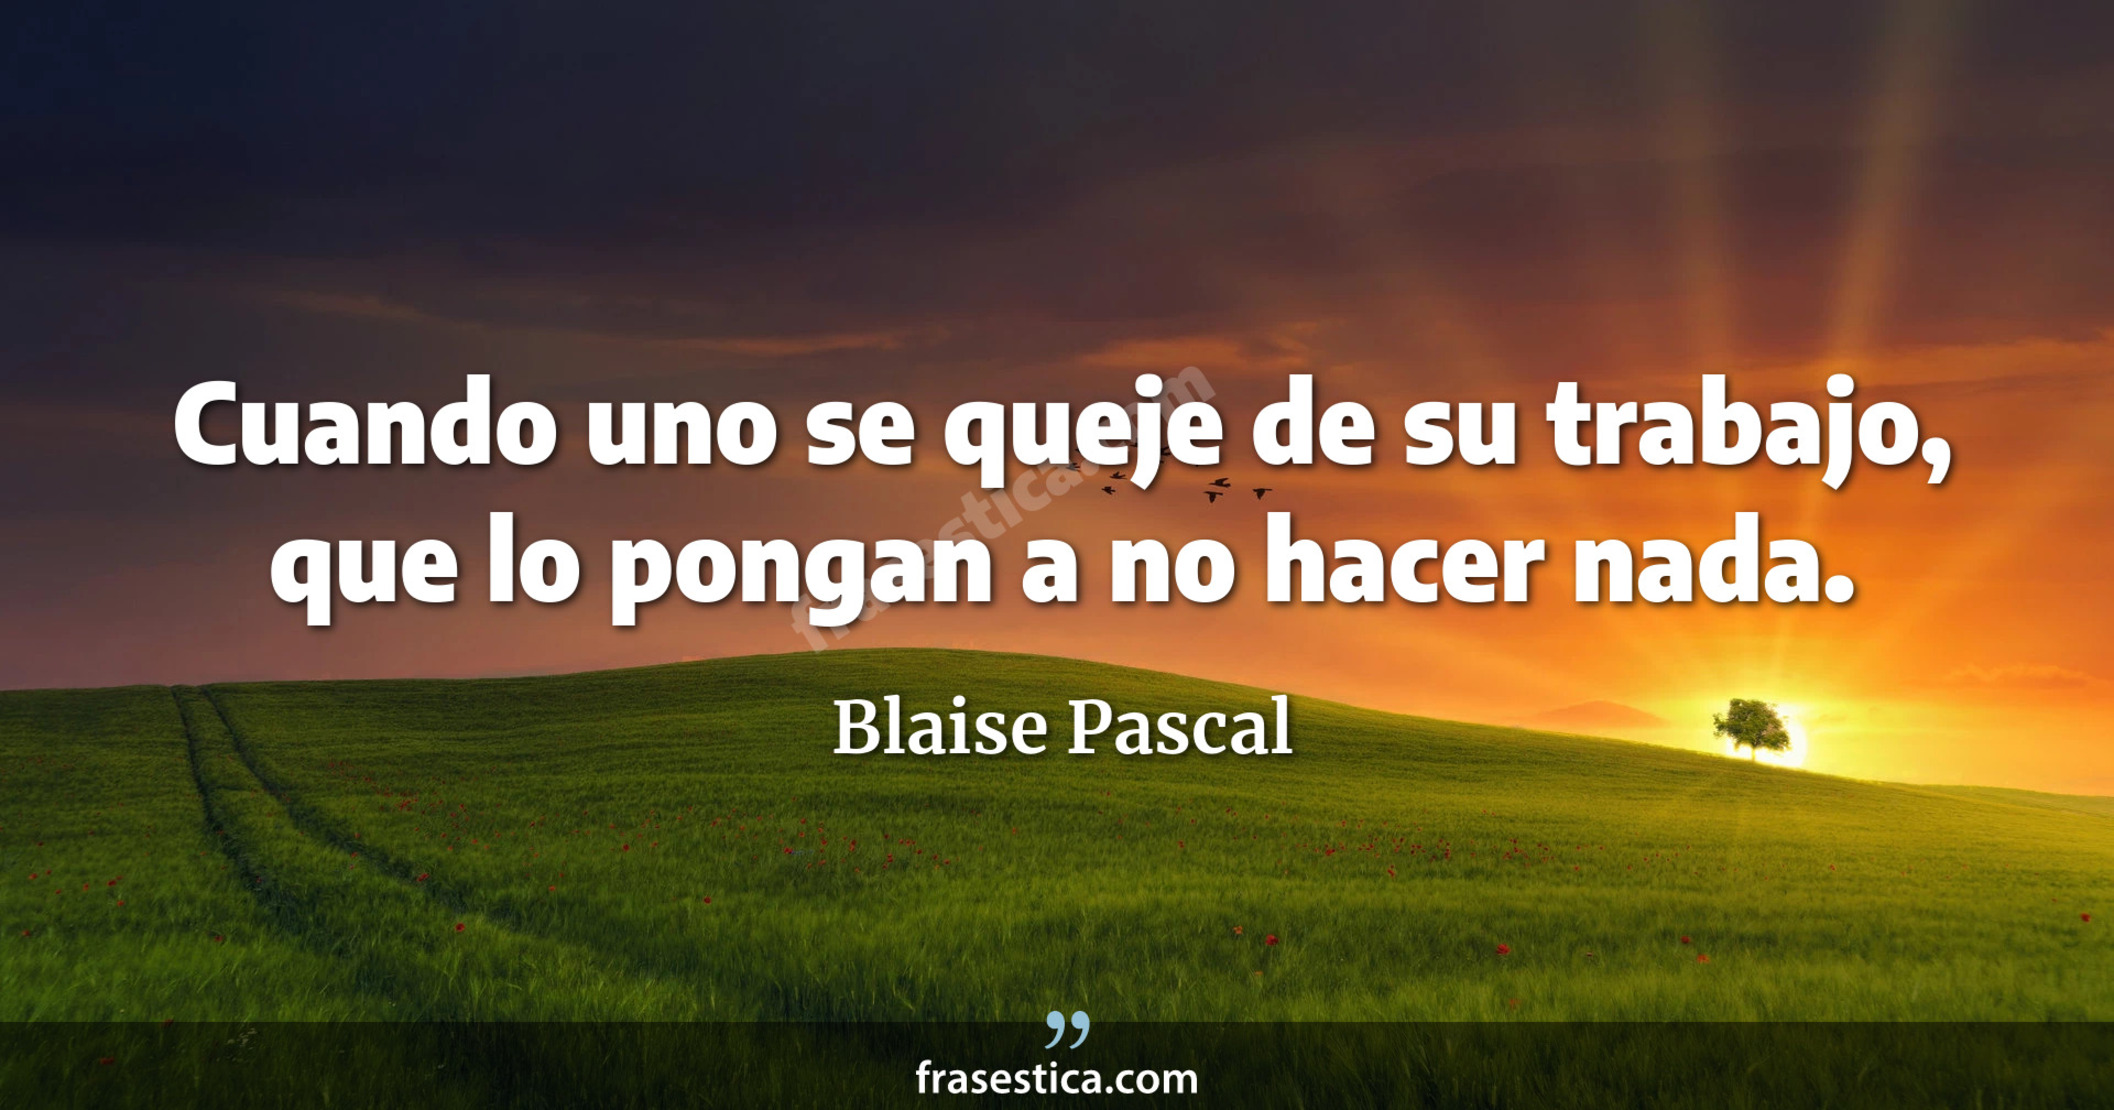 Cuando uno se queje de su trabajo, que lo pongan a no hacer nada. - Blaise Pascal